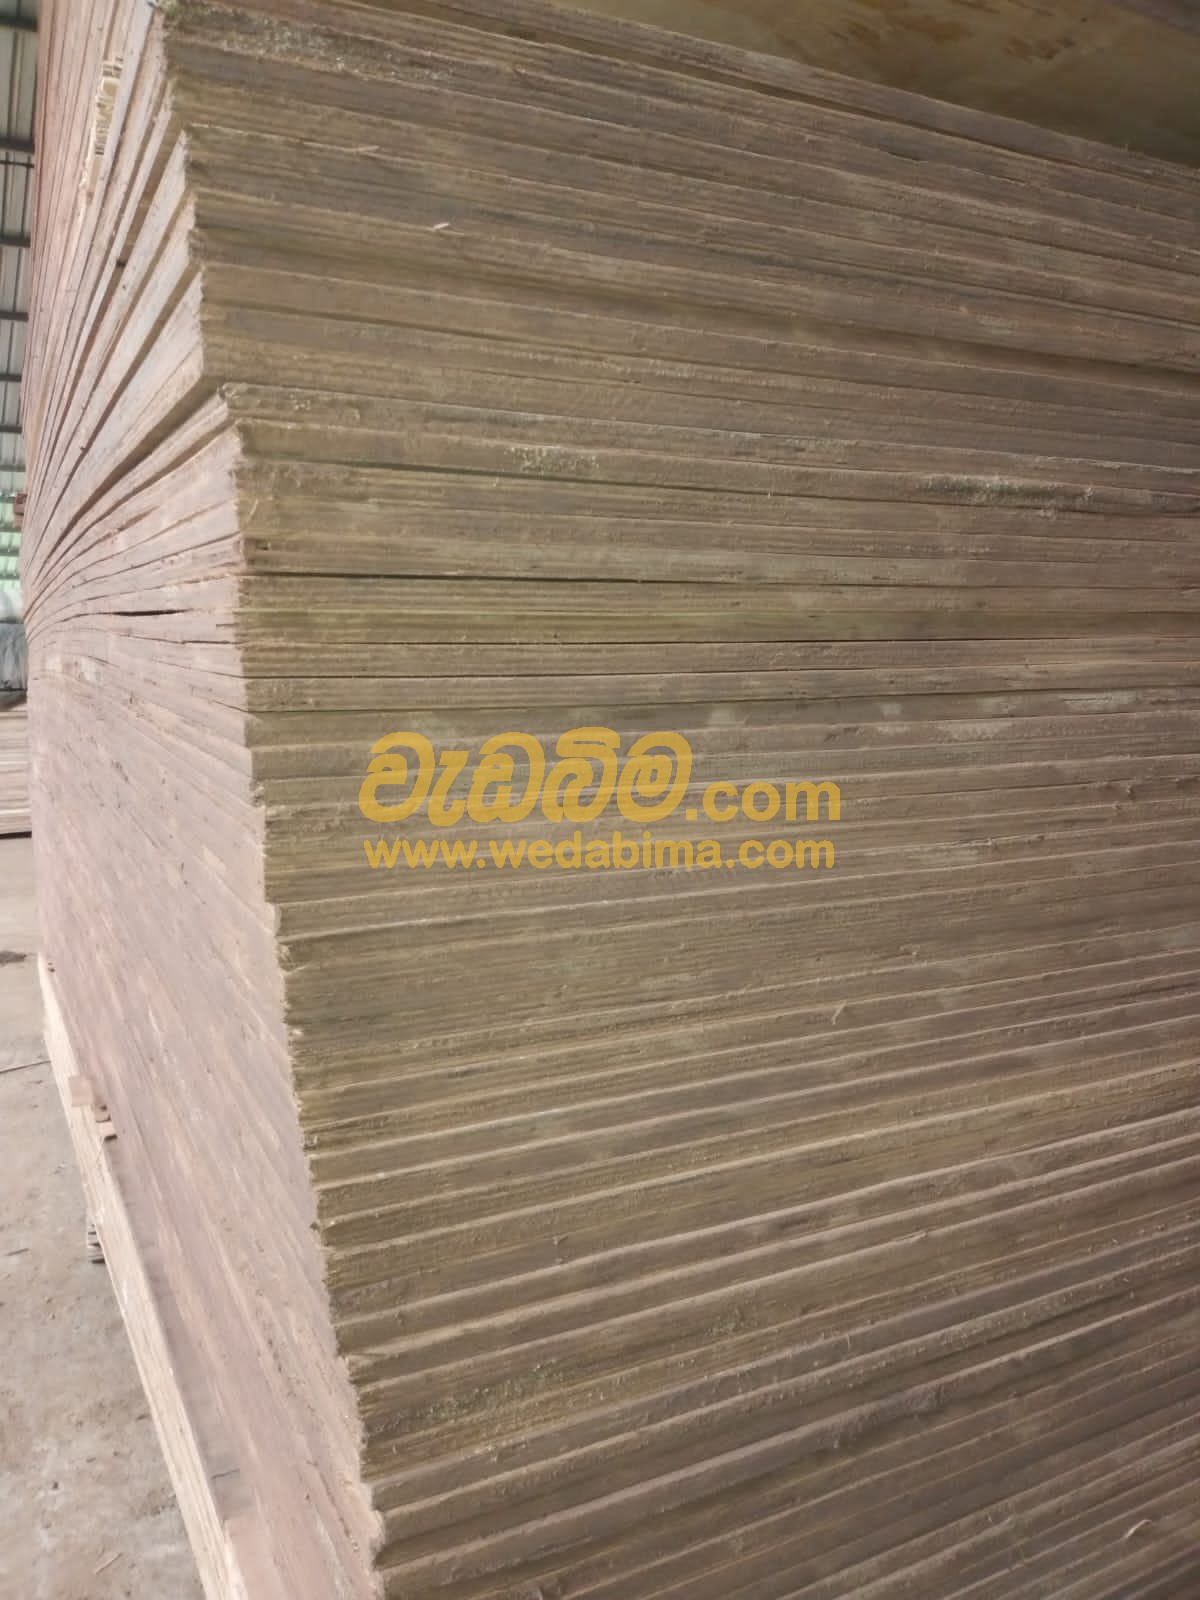 12mm plywood board price in sri lanka